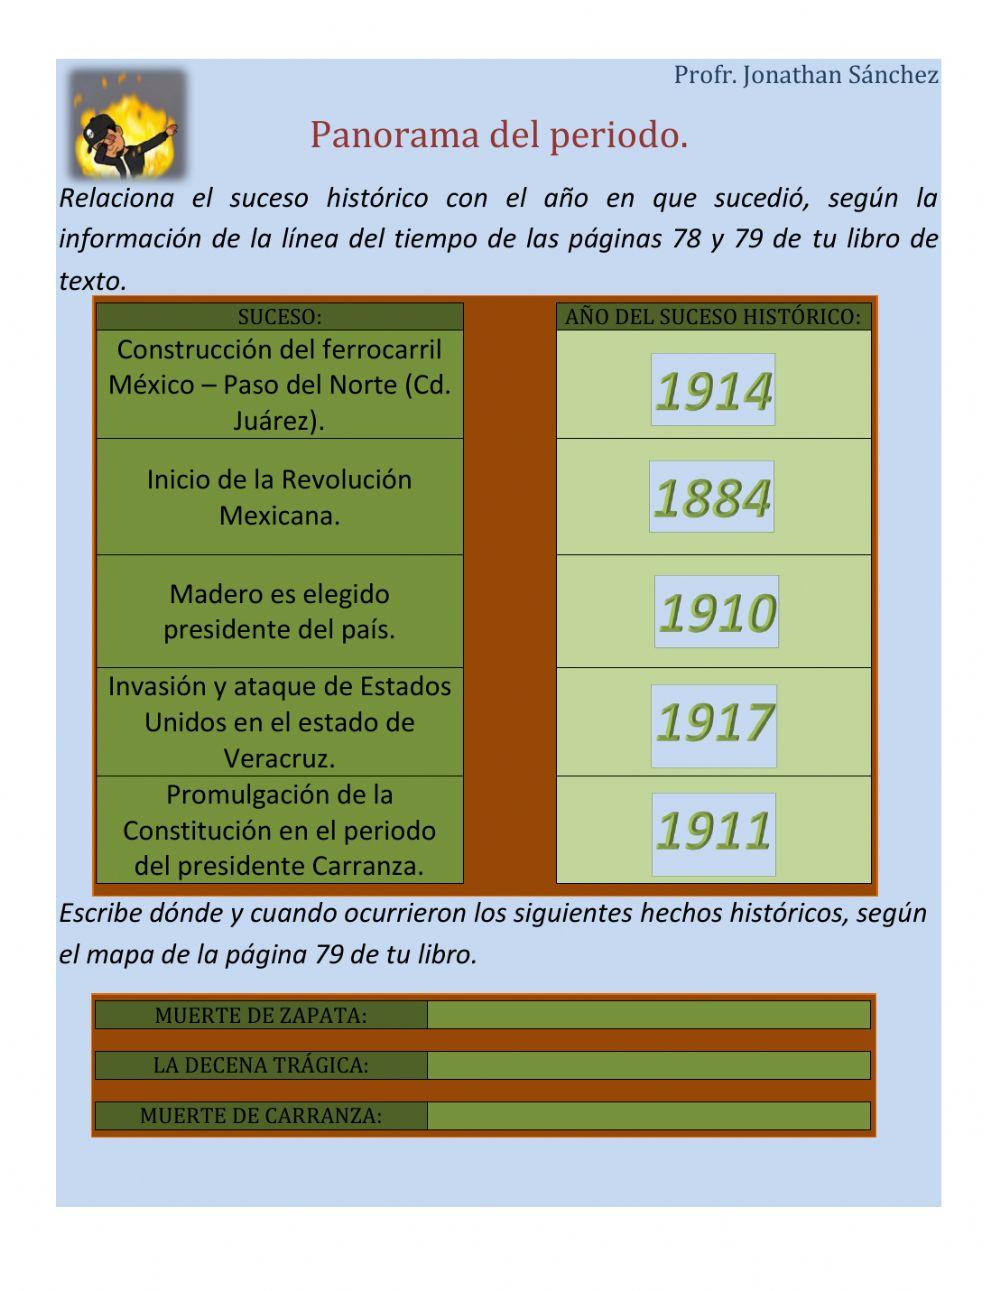 Panorama de la Revolución Mexicana.